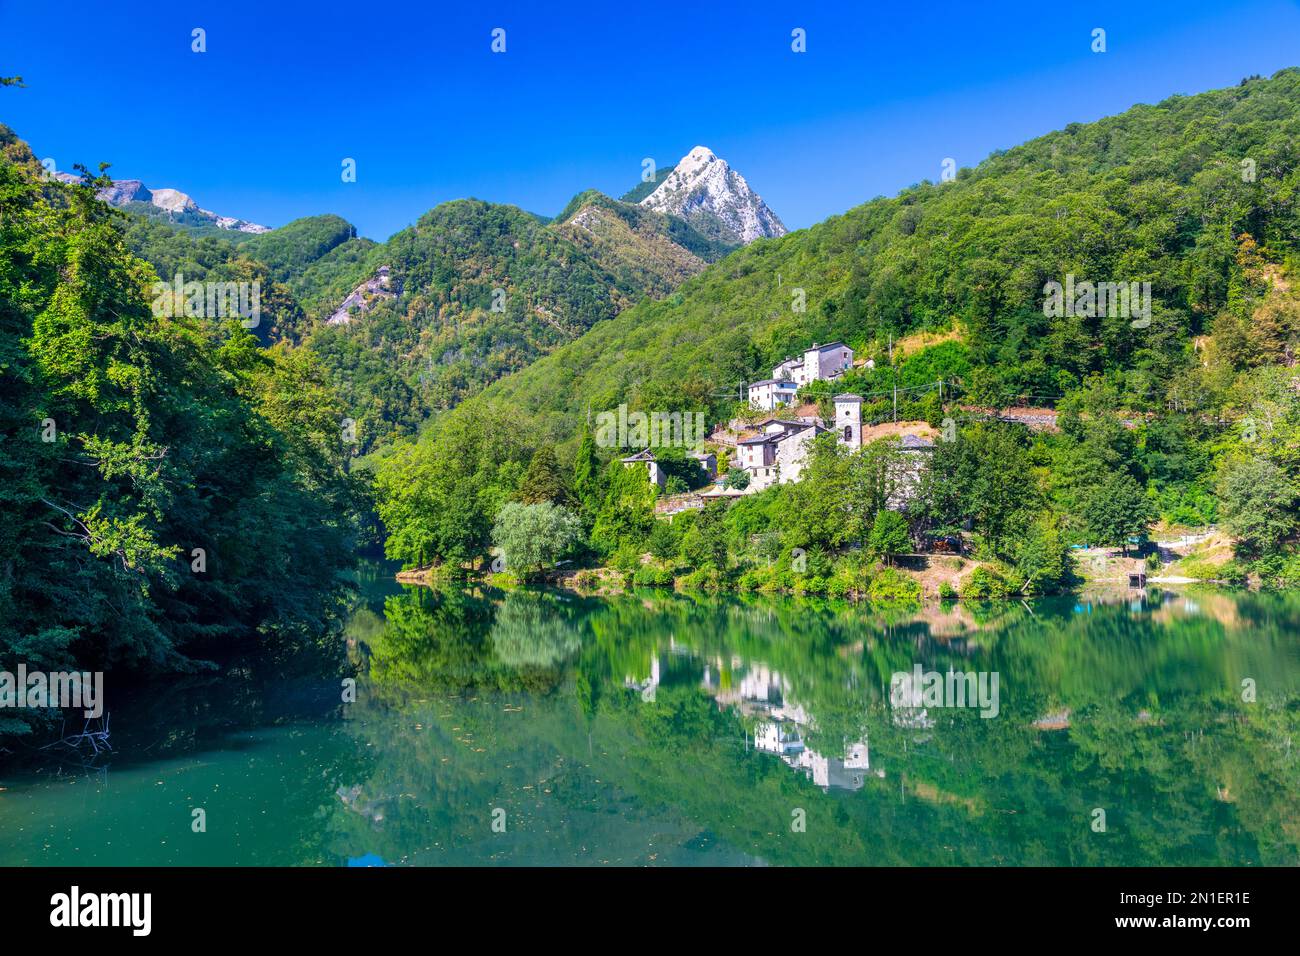 Isola Santa, Lac et Alpes Apuanes, Garfagnana, Toscane, Italie, Europe Banque D'Images